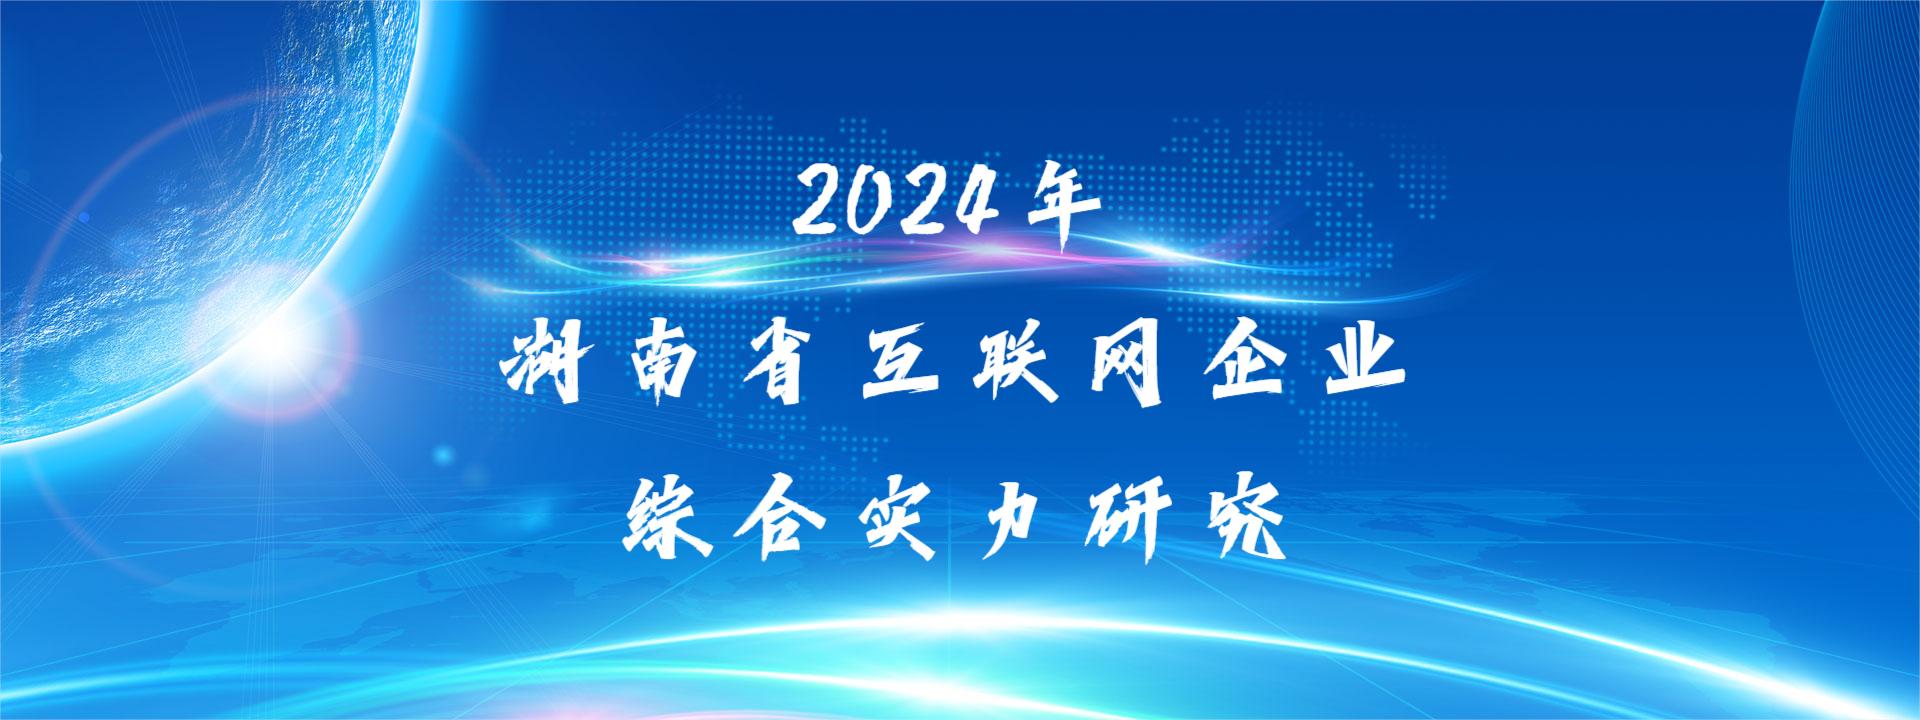 关于开展2024年湖南省互联网企业综合实力研究工作的通知